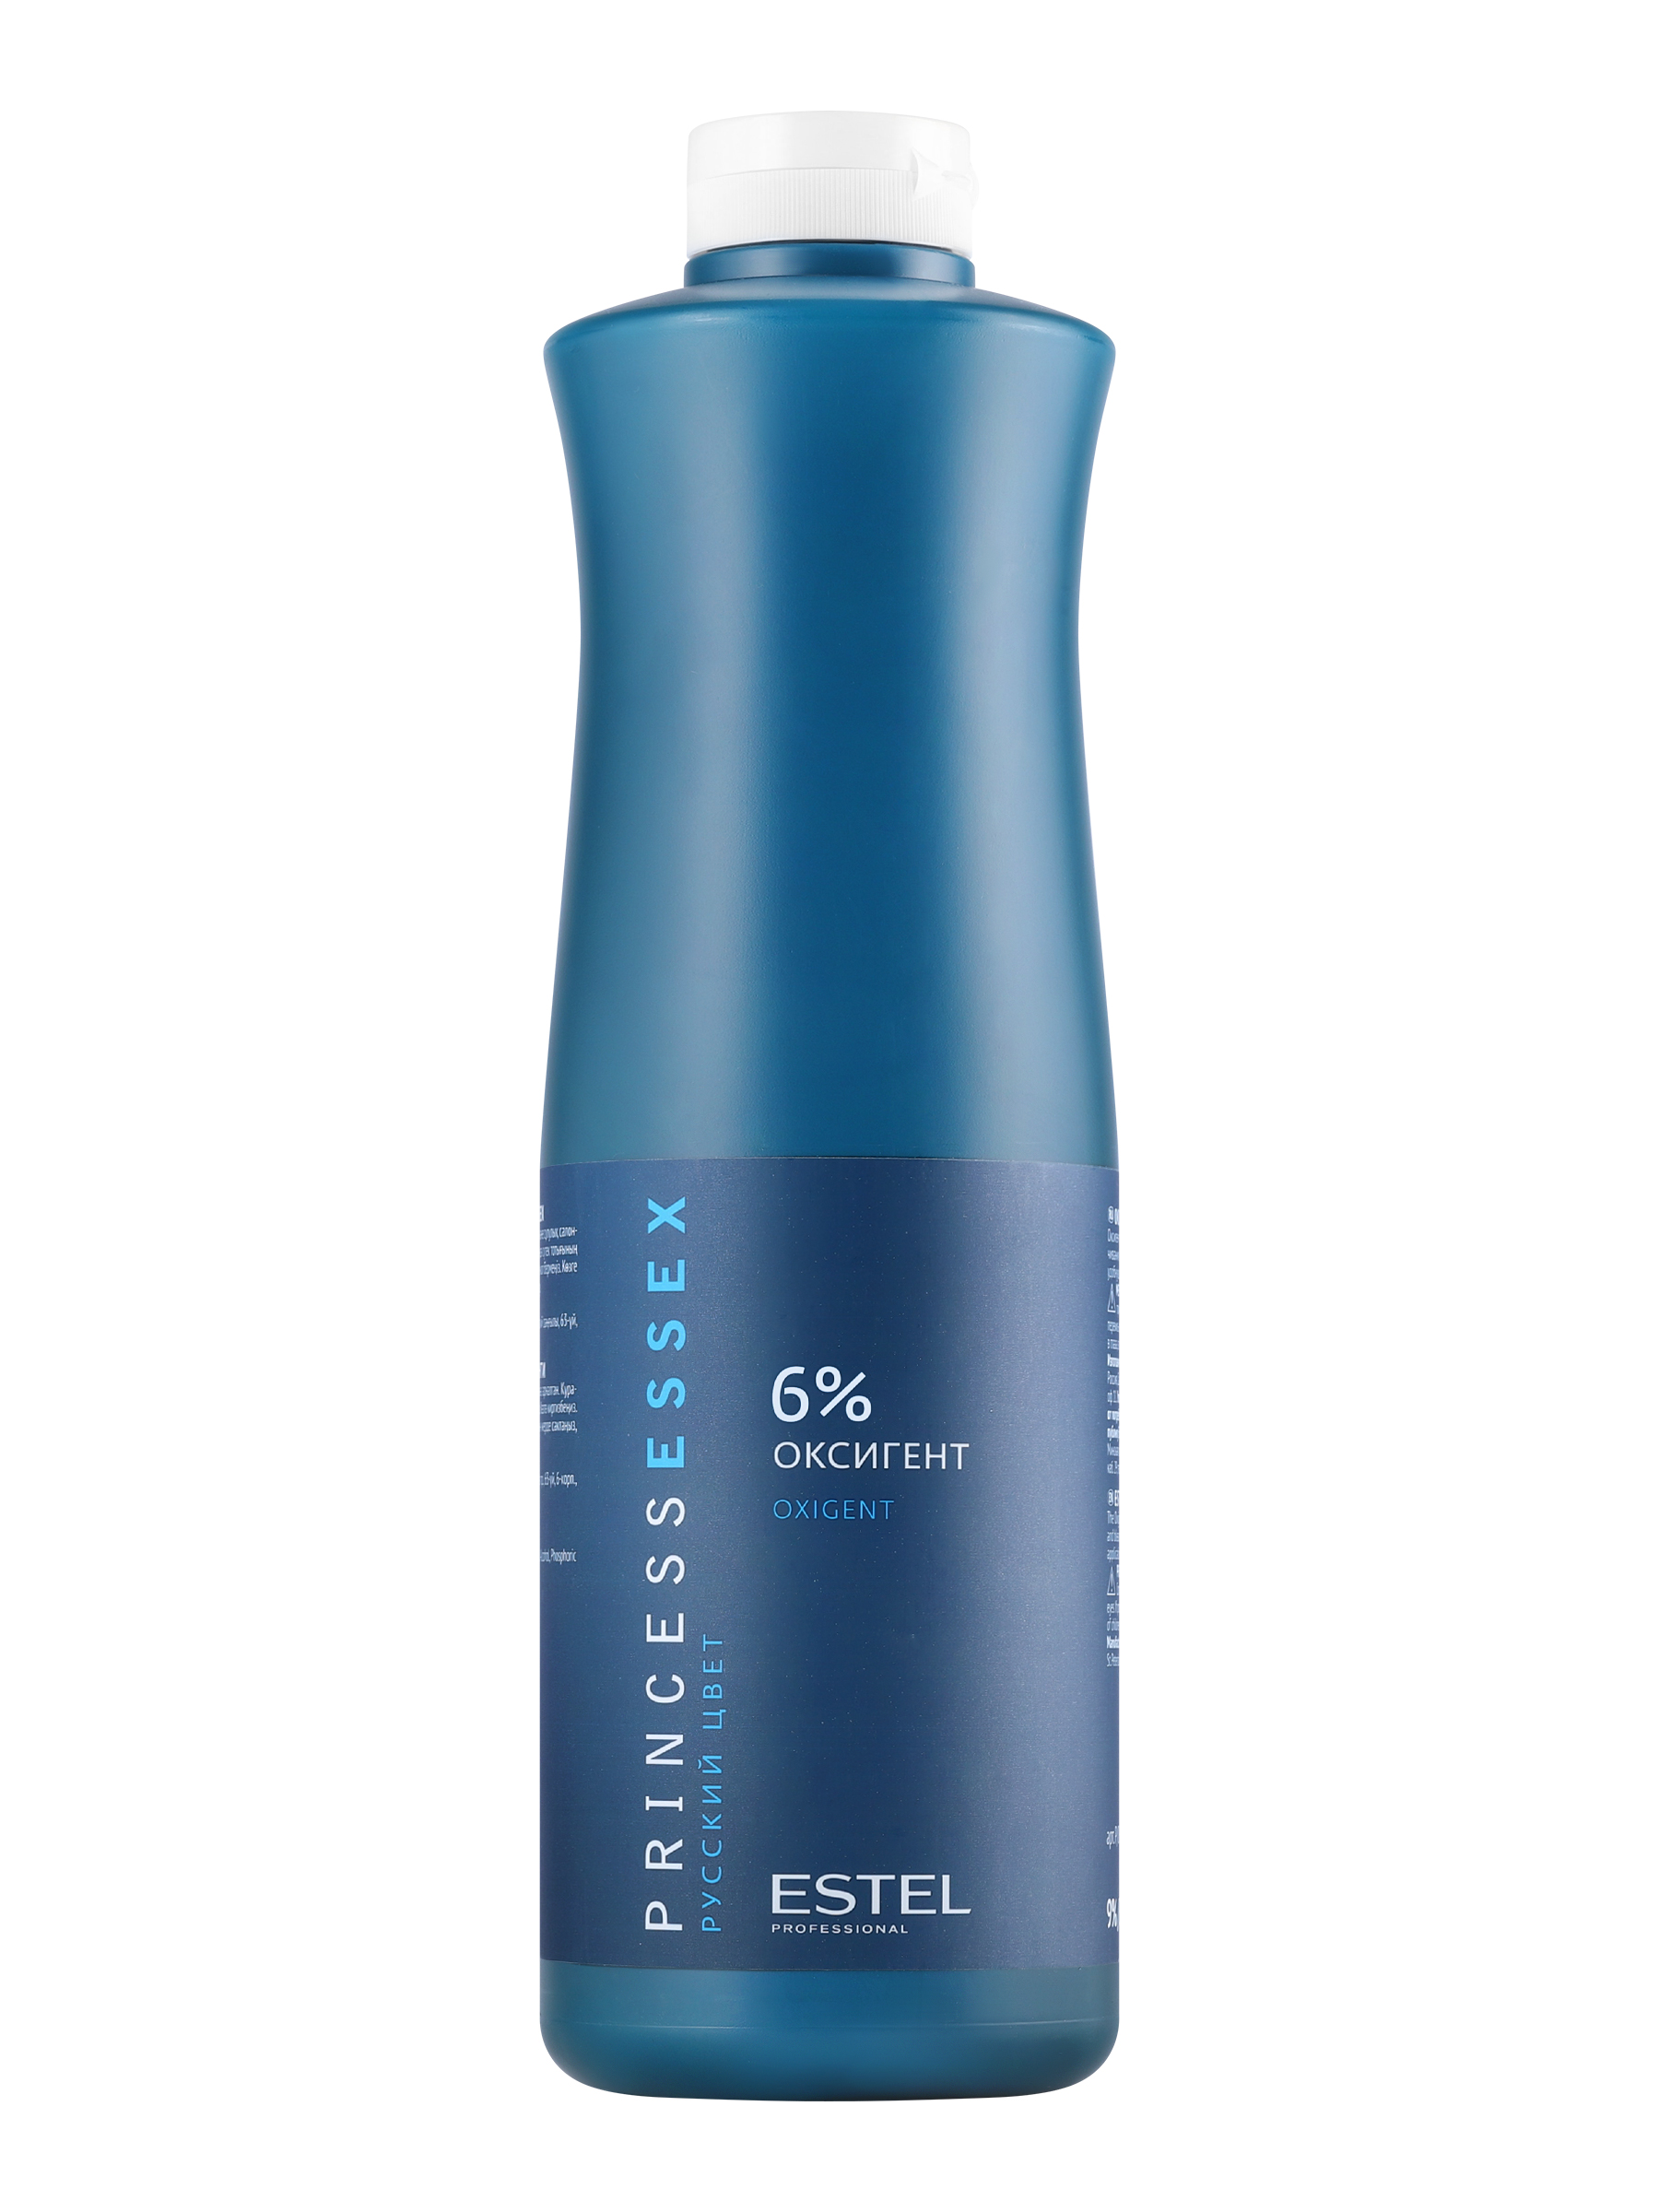 Проявитель Estel Essex Oxigent 6% 1 л проявитель selective professional colorevo oxy 3% 1 л